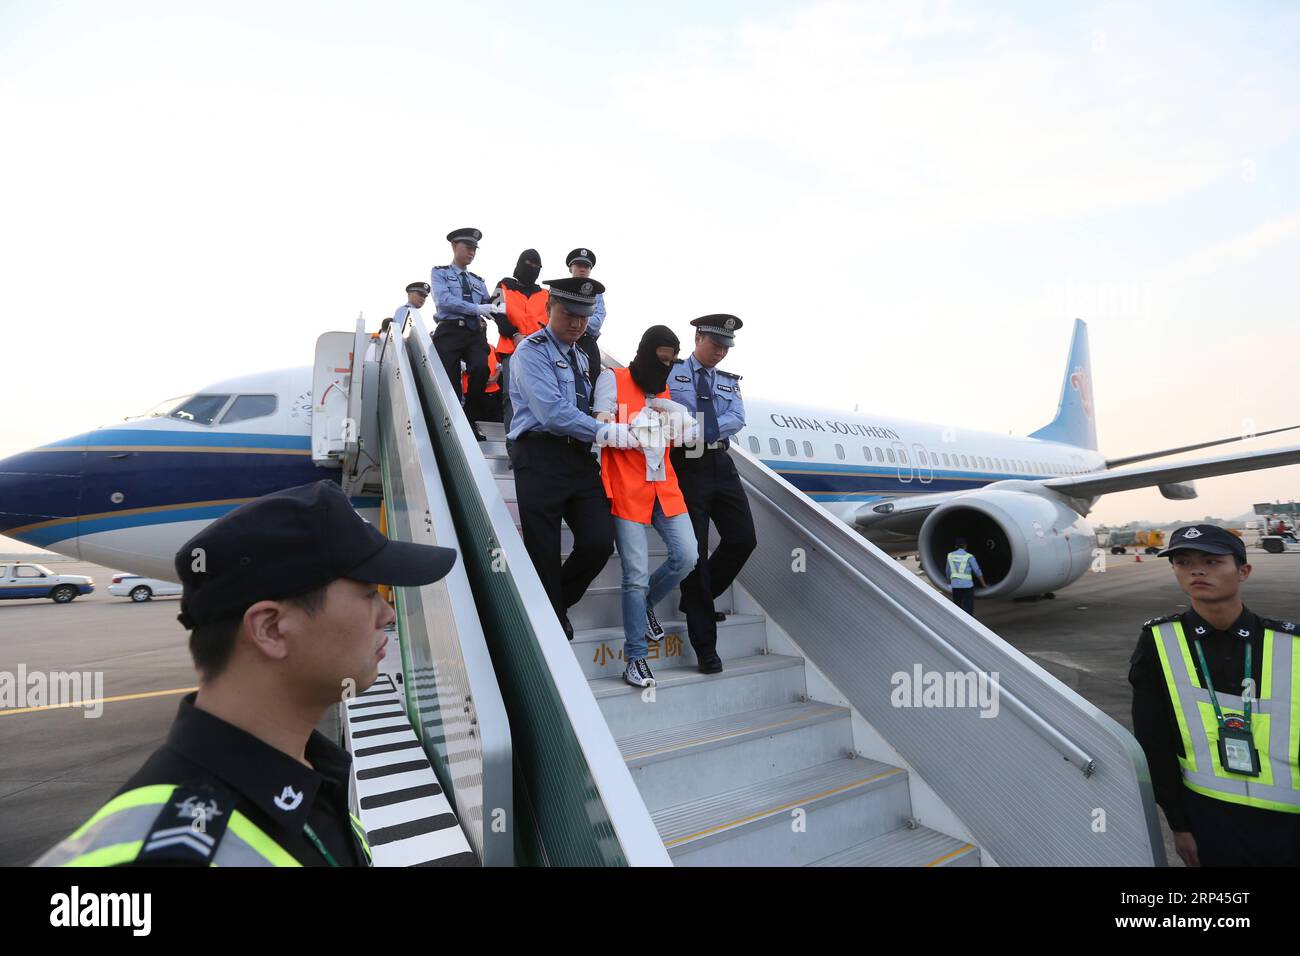 (181027) -- GUANGZHOU, 27. Oktober 2018 -- Verdächtige von Wirtschaftskriminalität werden begleitet, um am Guangzhou Baiyun International Airport in Guangzhou, der Hauptstadt der südchinesischen Provinz Guangdong, am 26. Oktober 2018 anzukommen. Siebzehn Flüchtlinge, die verdächtigt werden, illegale Spendenaktionen über Online-Kreditplattformen zu sammeln, kehrten am Freitag aus Thailand nach Guangzhou zurück. Seit Juni sind einige Führungskräfte, die illegale Peer-to-Peer-Online-Kreditplattformen betreiben, aufgrund einer Kapitalkrise aus Übersee geflohen. Das Ministerium für öffentliche Sicherheit hat daher spezialisierte Arbeitseinheiten nach Übersee entsandt, um diese Verdächtigen von Wirtschaftskriminalität zu fangen. ) ( Stockfoto